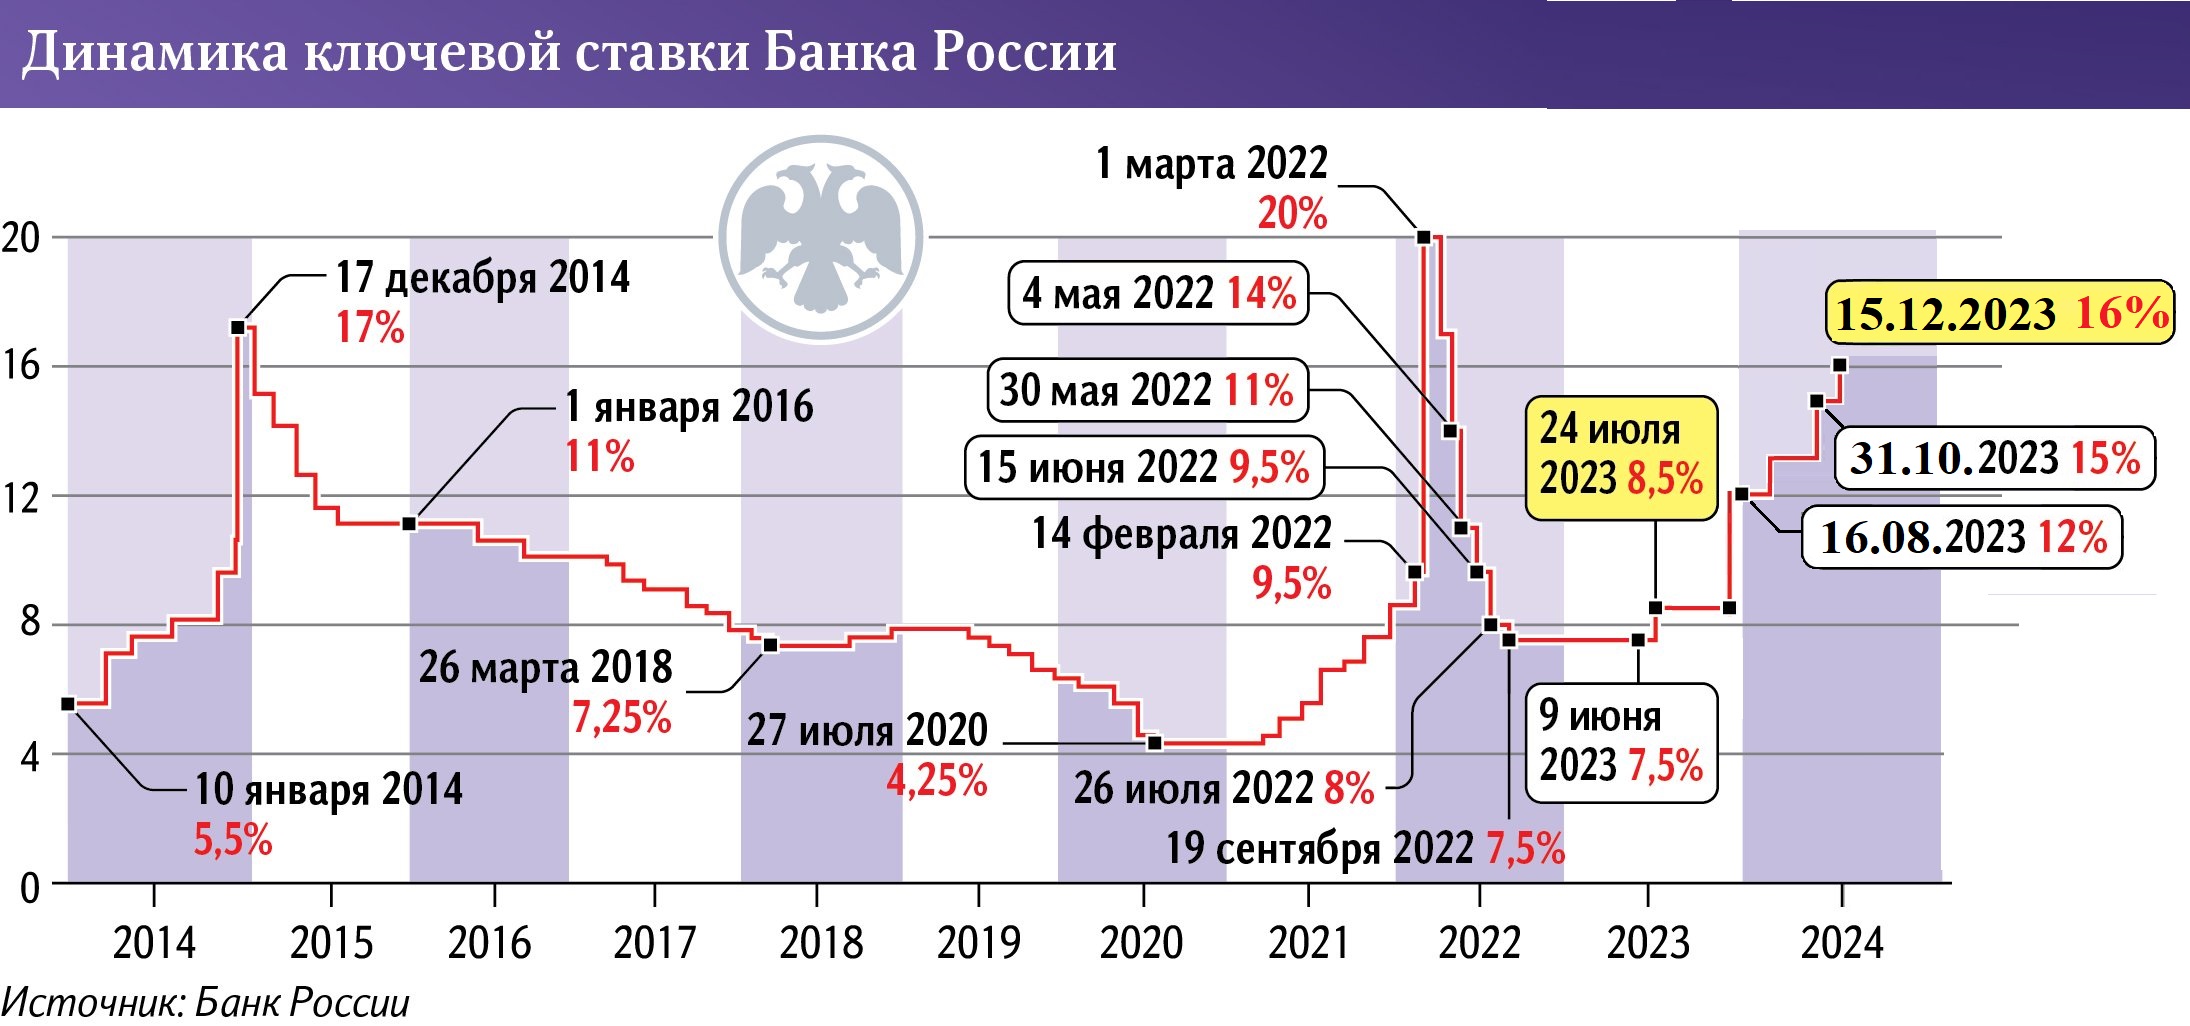 Ндфл 15 процентов в 2024 году. Динамика ключевой ставки РФ 2023. Ключевая ставка. Динамика ключевой ставки в РФ 2023 год. Ключевая ставка динамика.